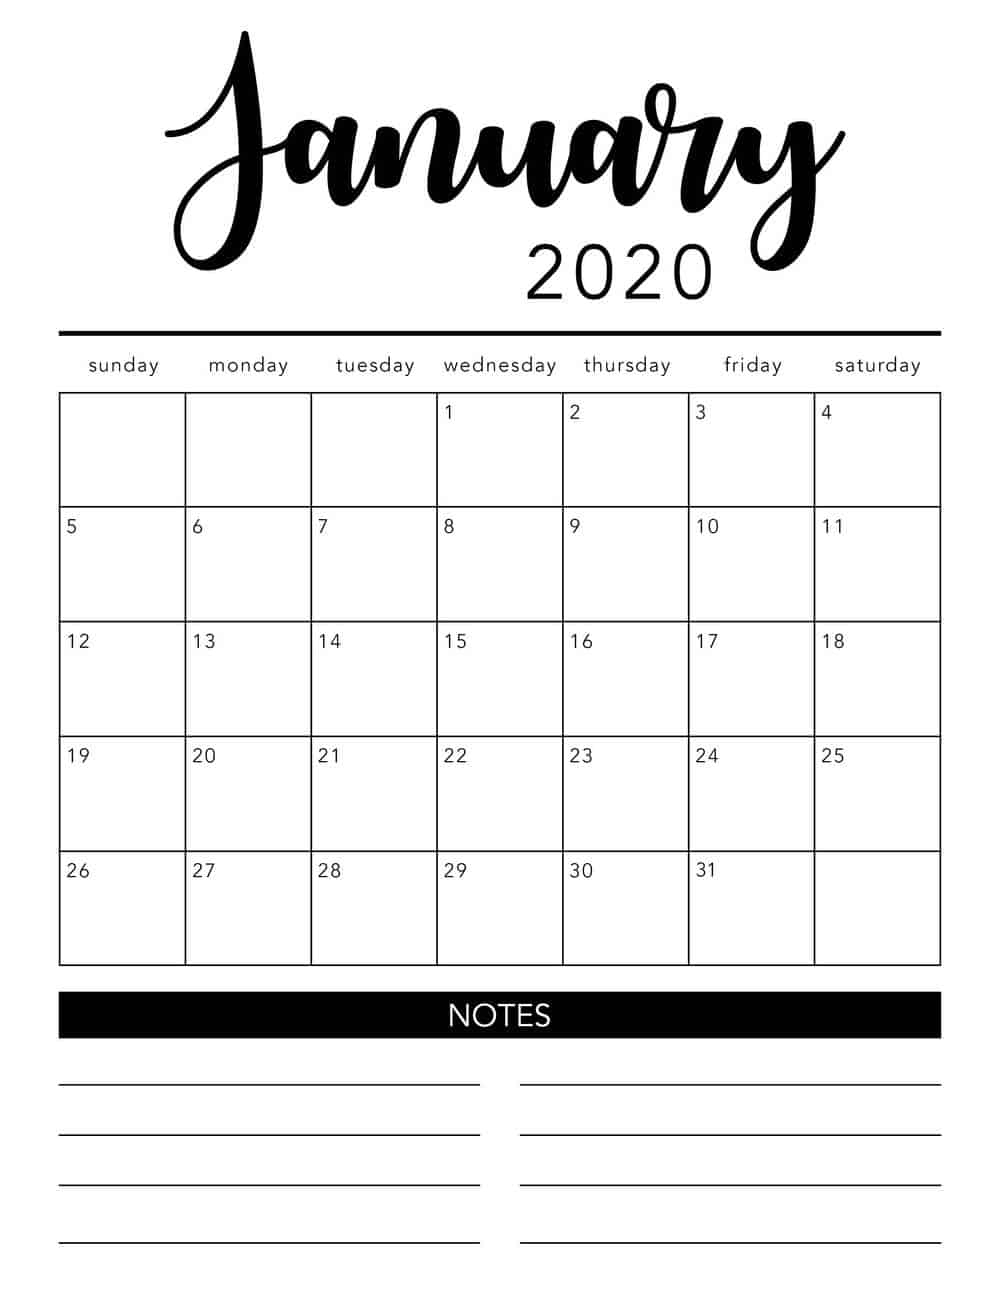 set calendar sunday through saturday for a mac